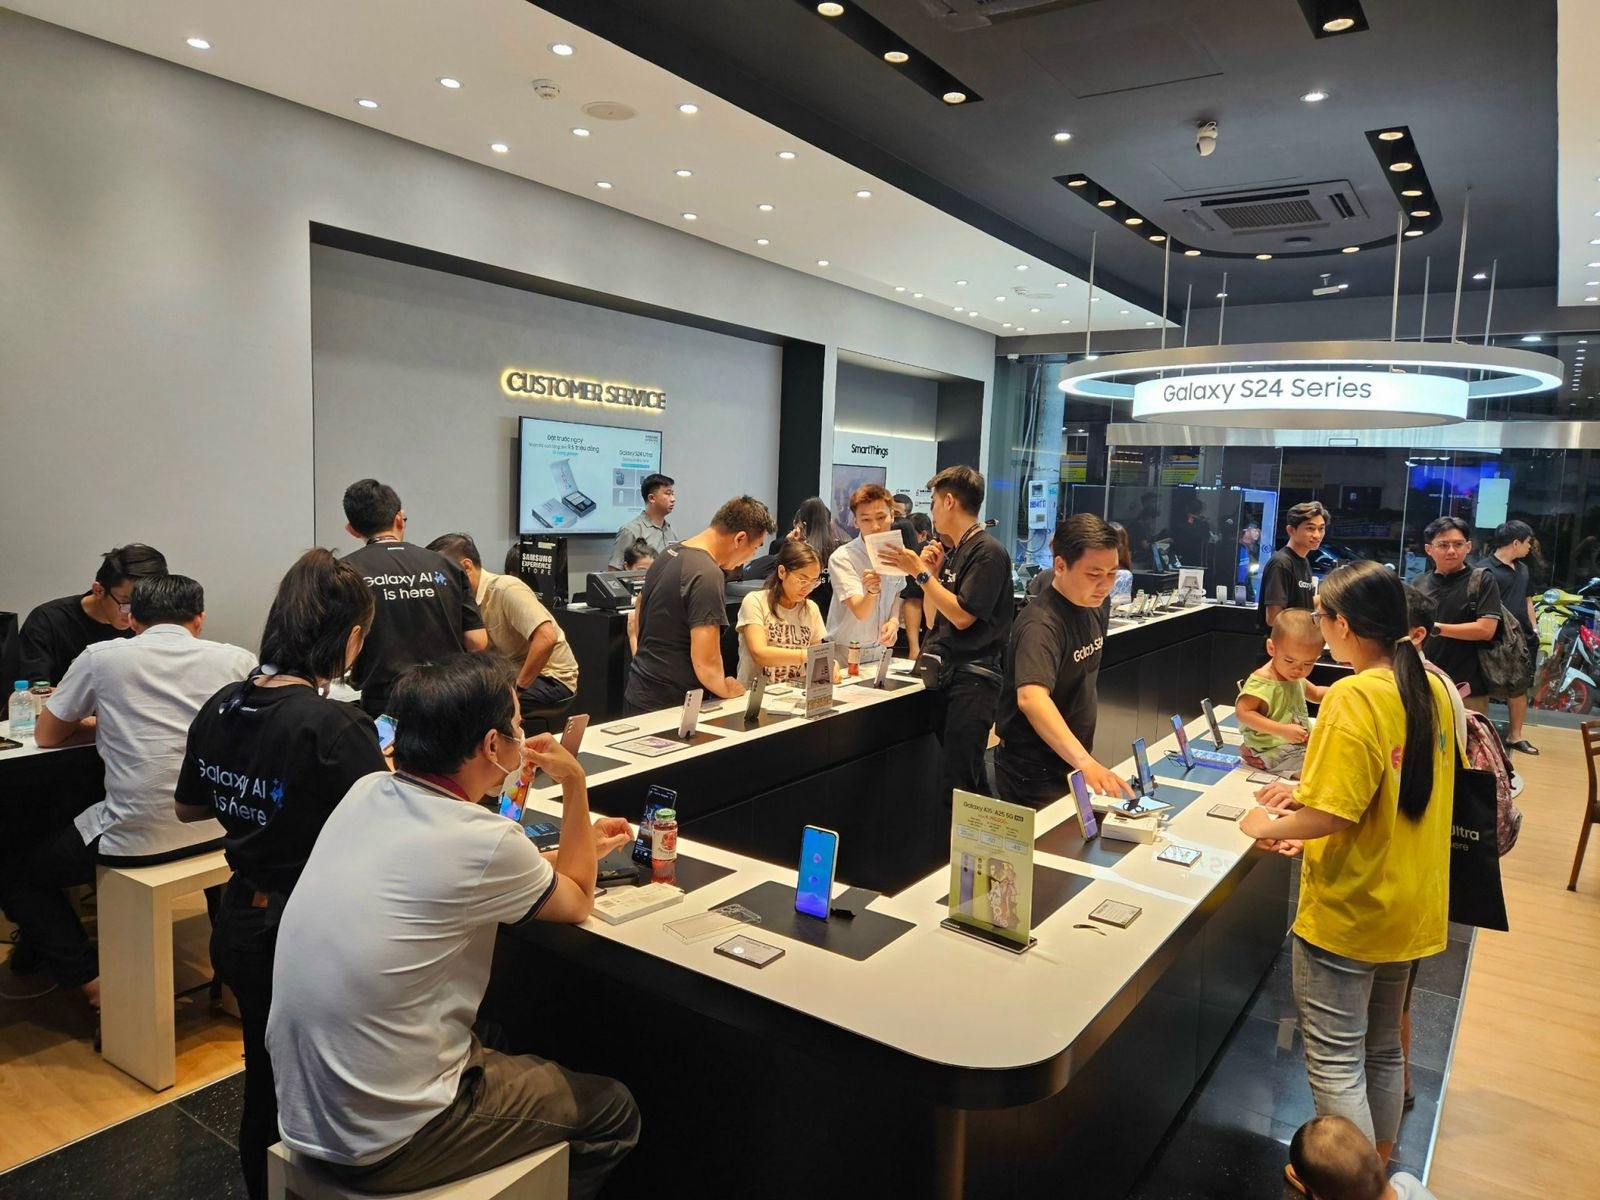 Toàn cảnh sự kiện trả hàng sớm Galaxy S24 Series tại Tablet Plaza và Samsung Experience Store